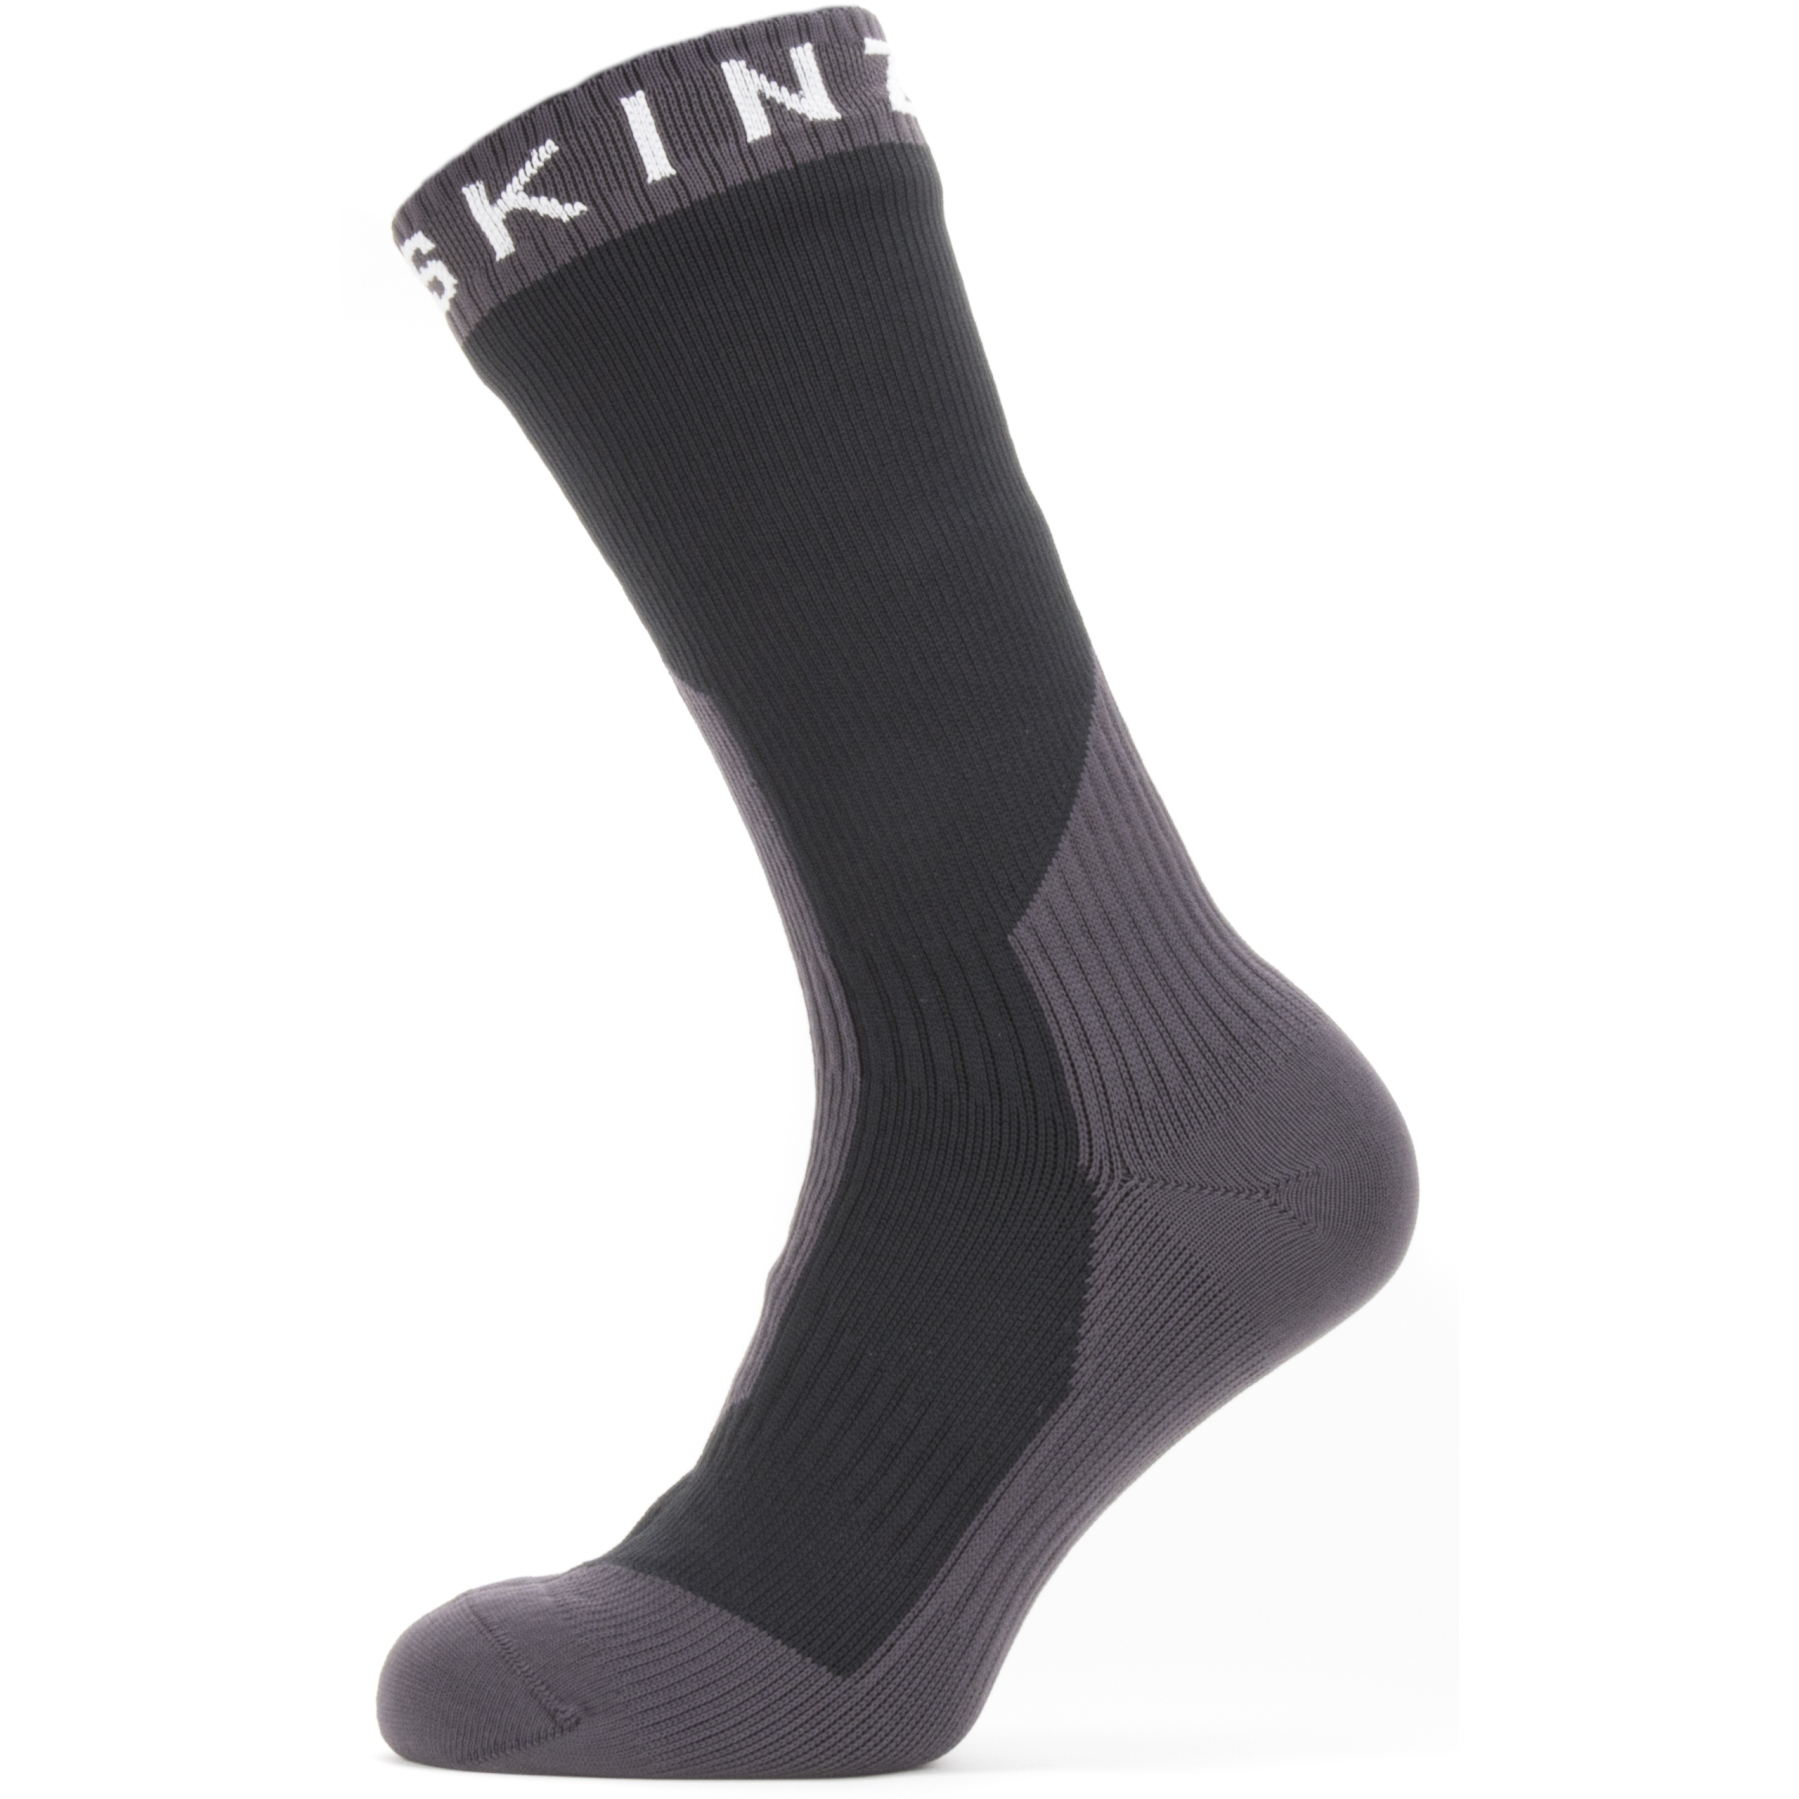 Produktbild von SealSkinz Stanfield Wasserdichte, mittellange Socken für extrem kaltes Wetter - Schwarz/Grau/Weiß